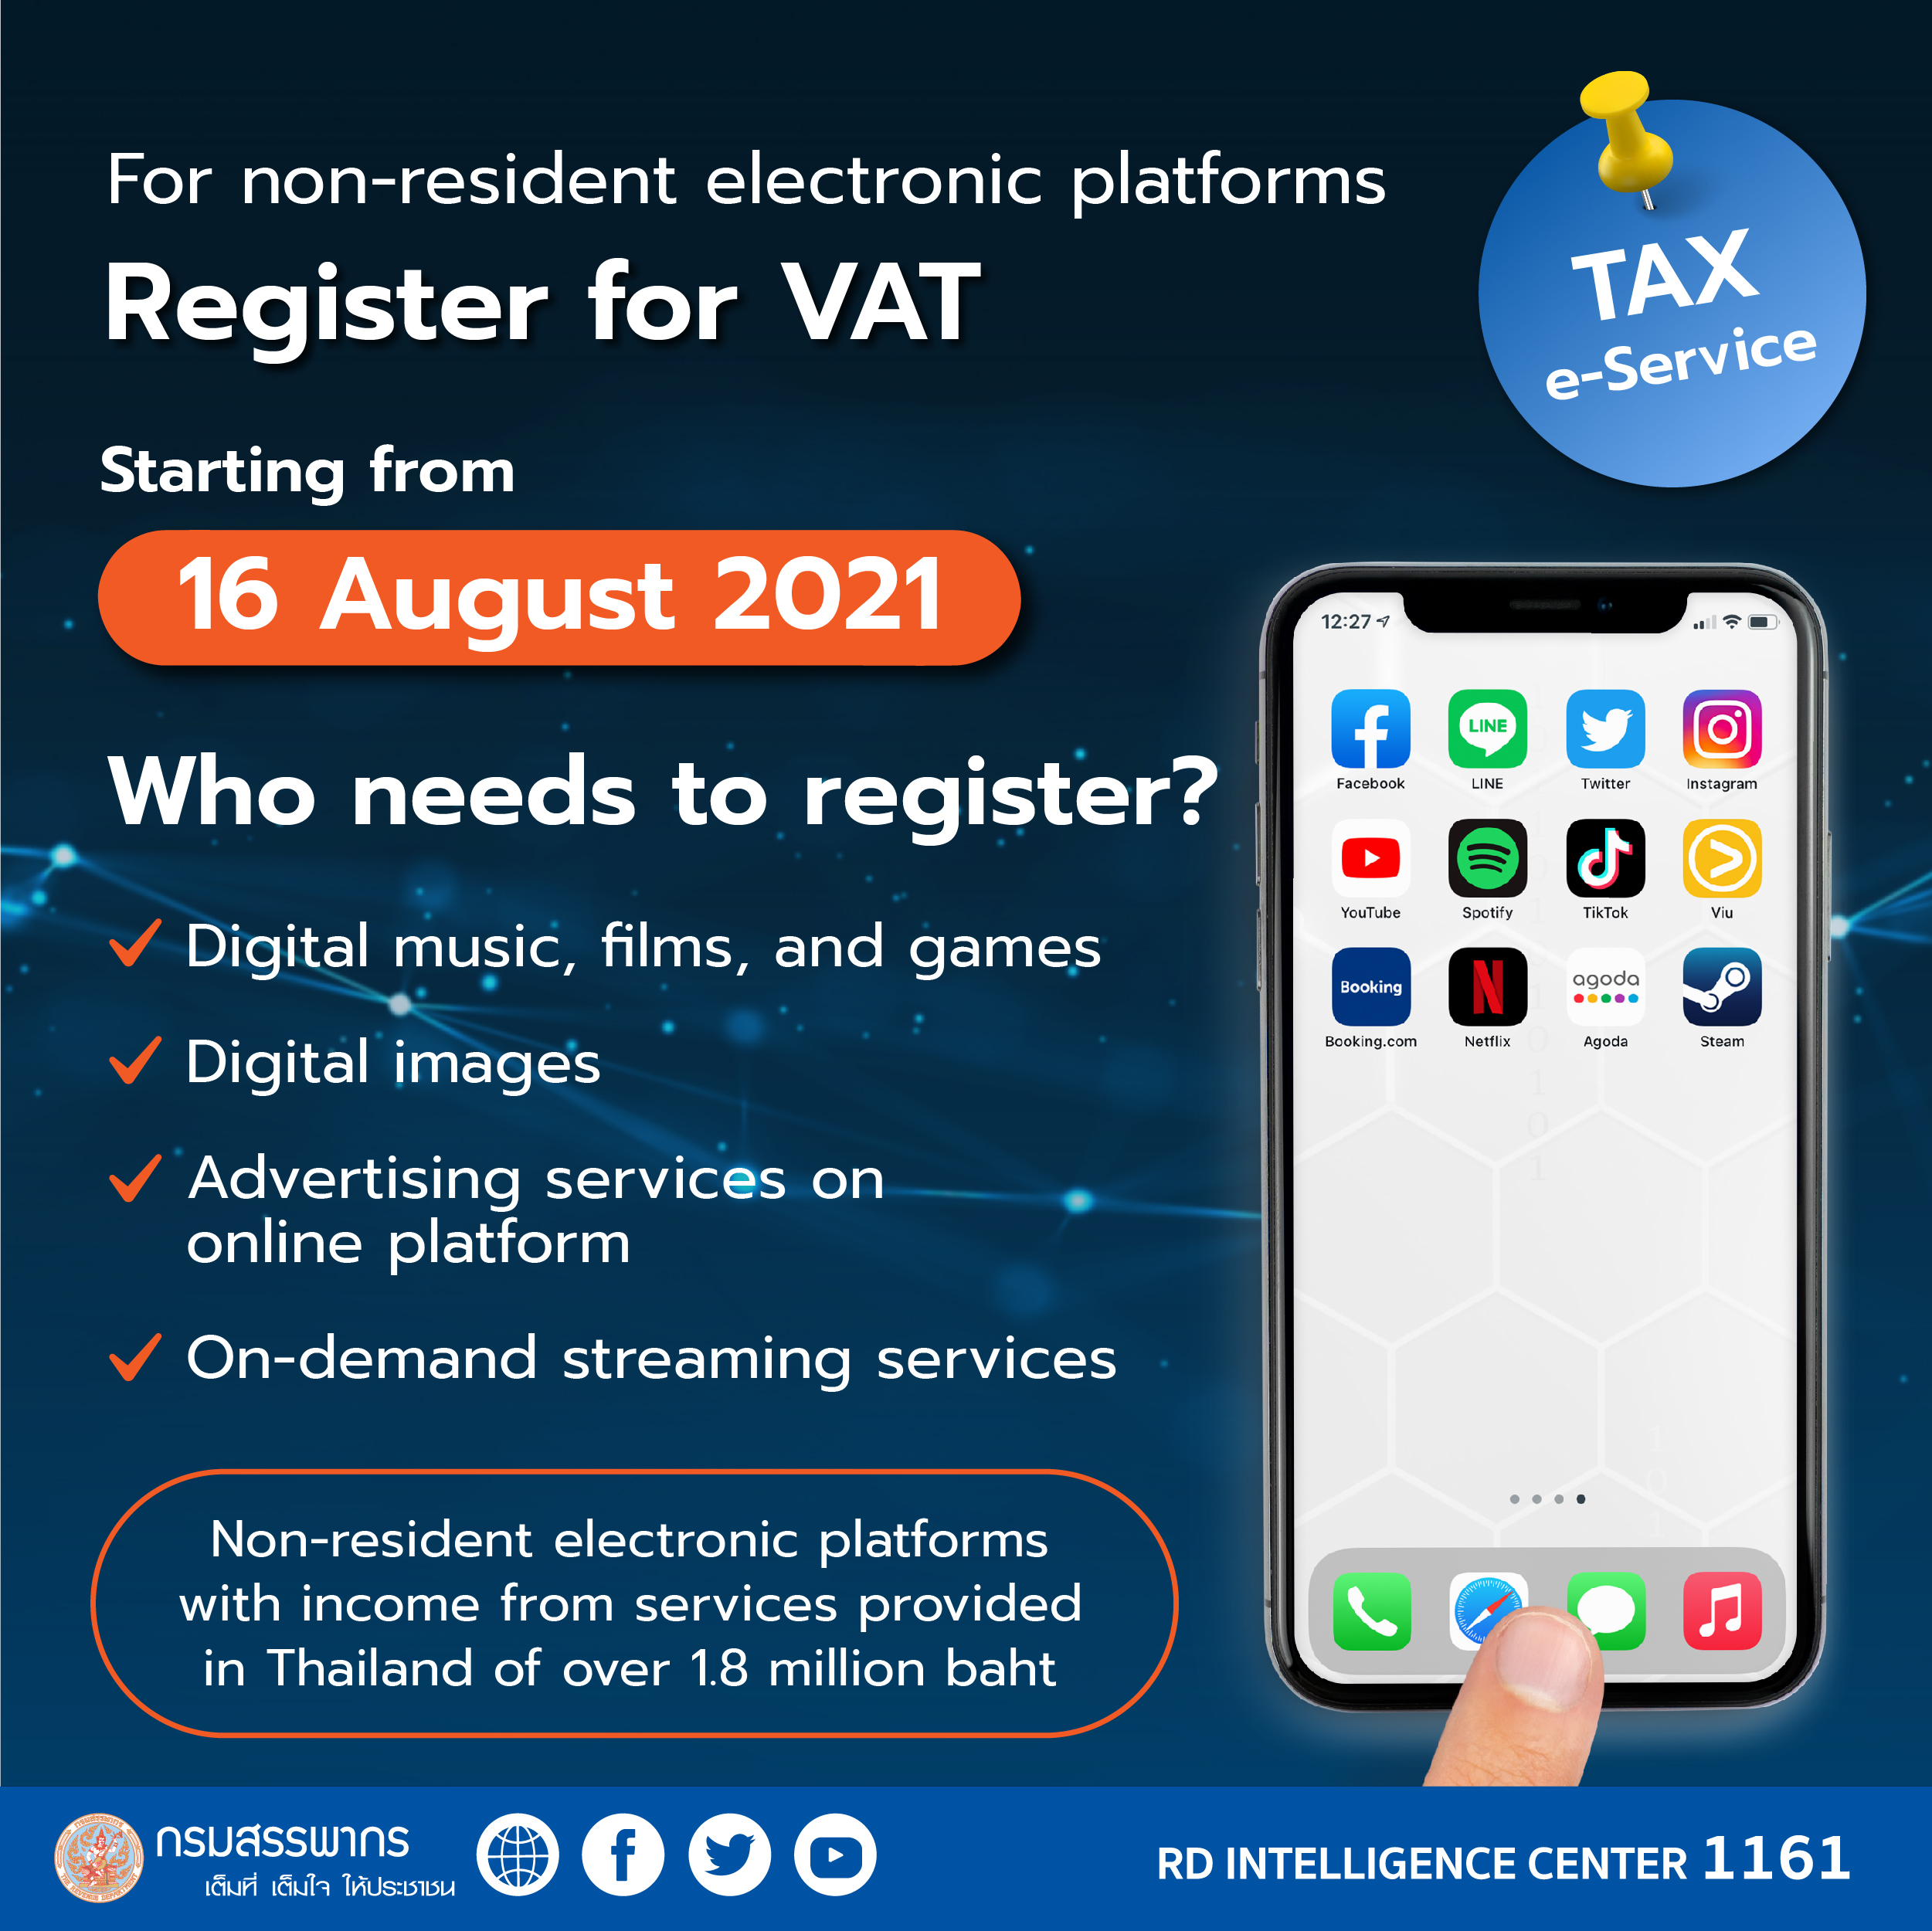 For Non-resident Electronic platforms register for VAT now